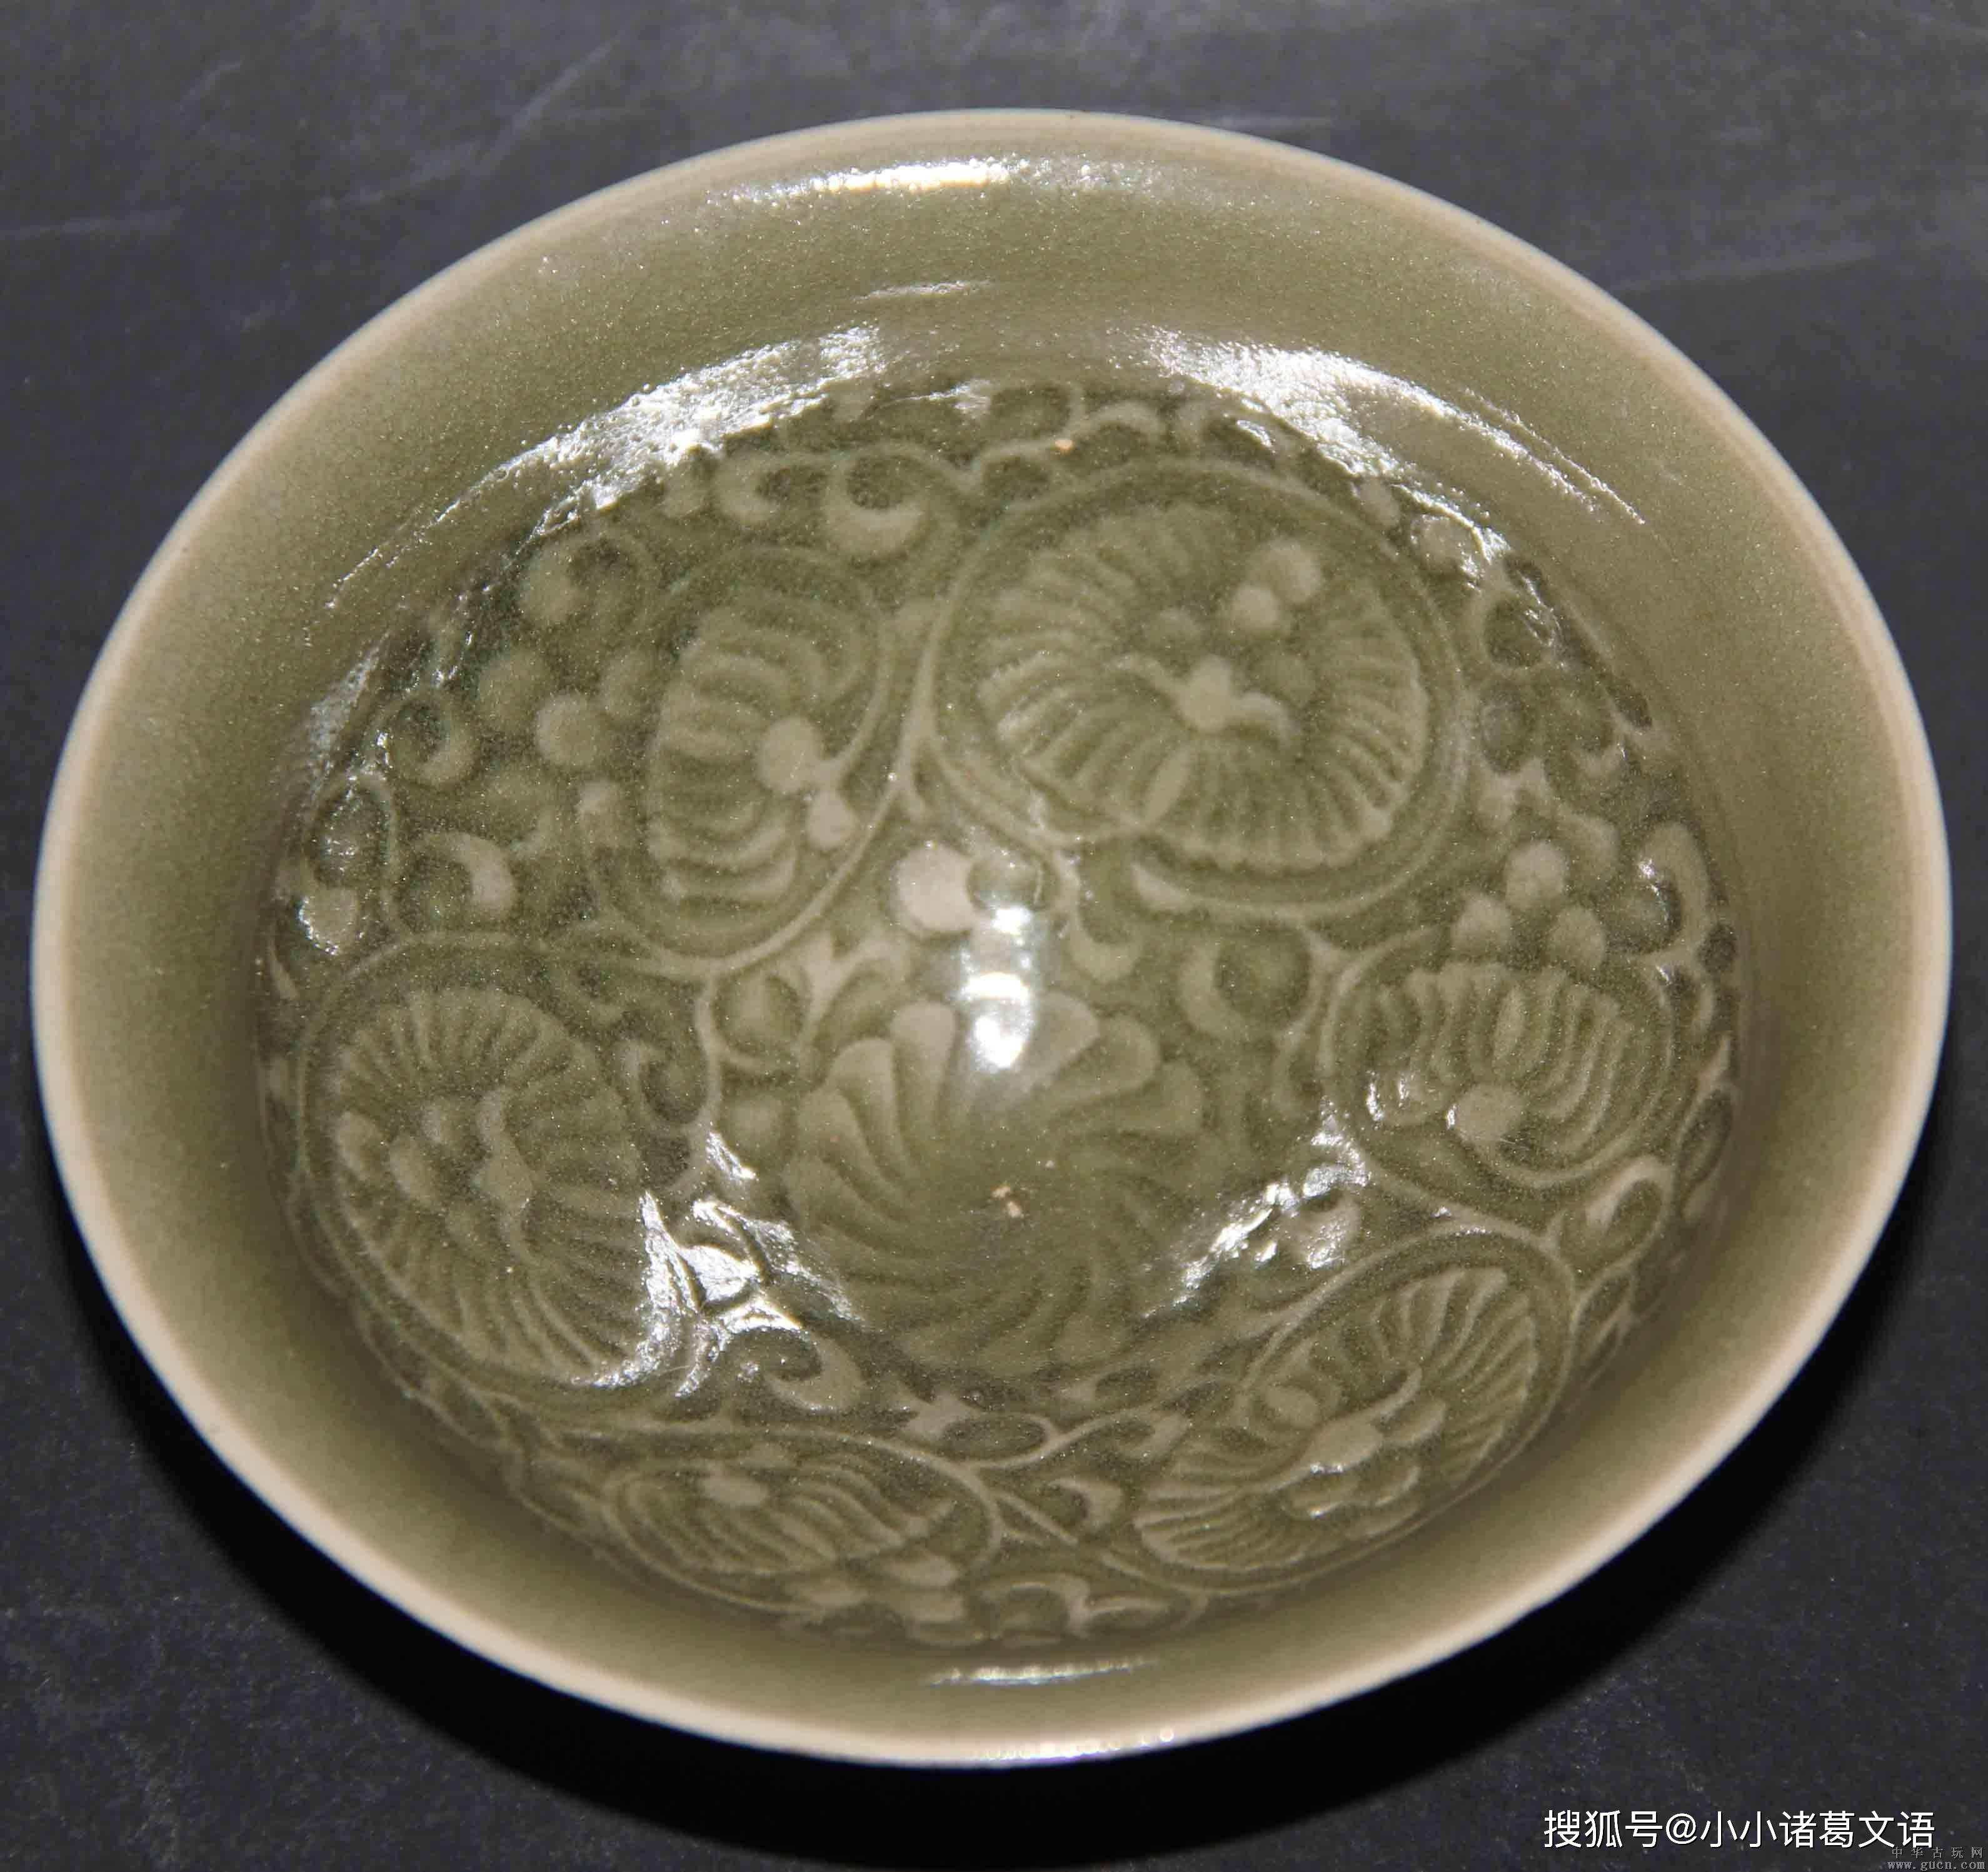 聊聊宋代耀州窑瓷器真品特征和鉴定方法